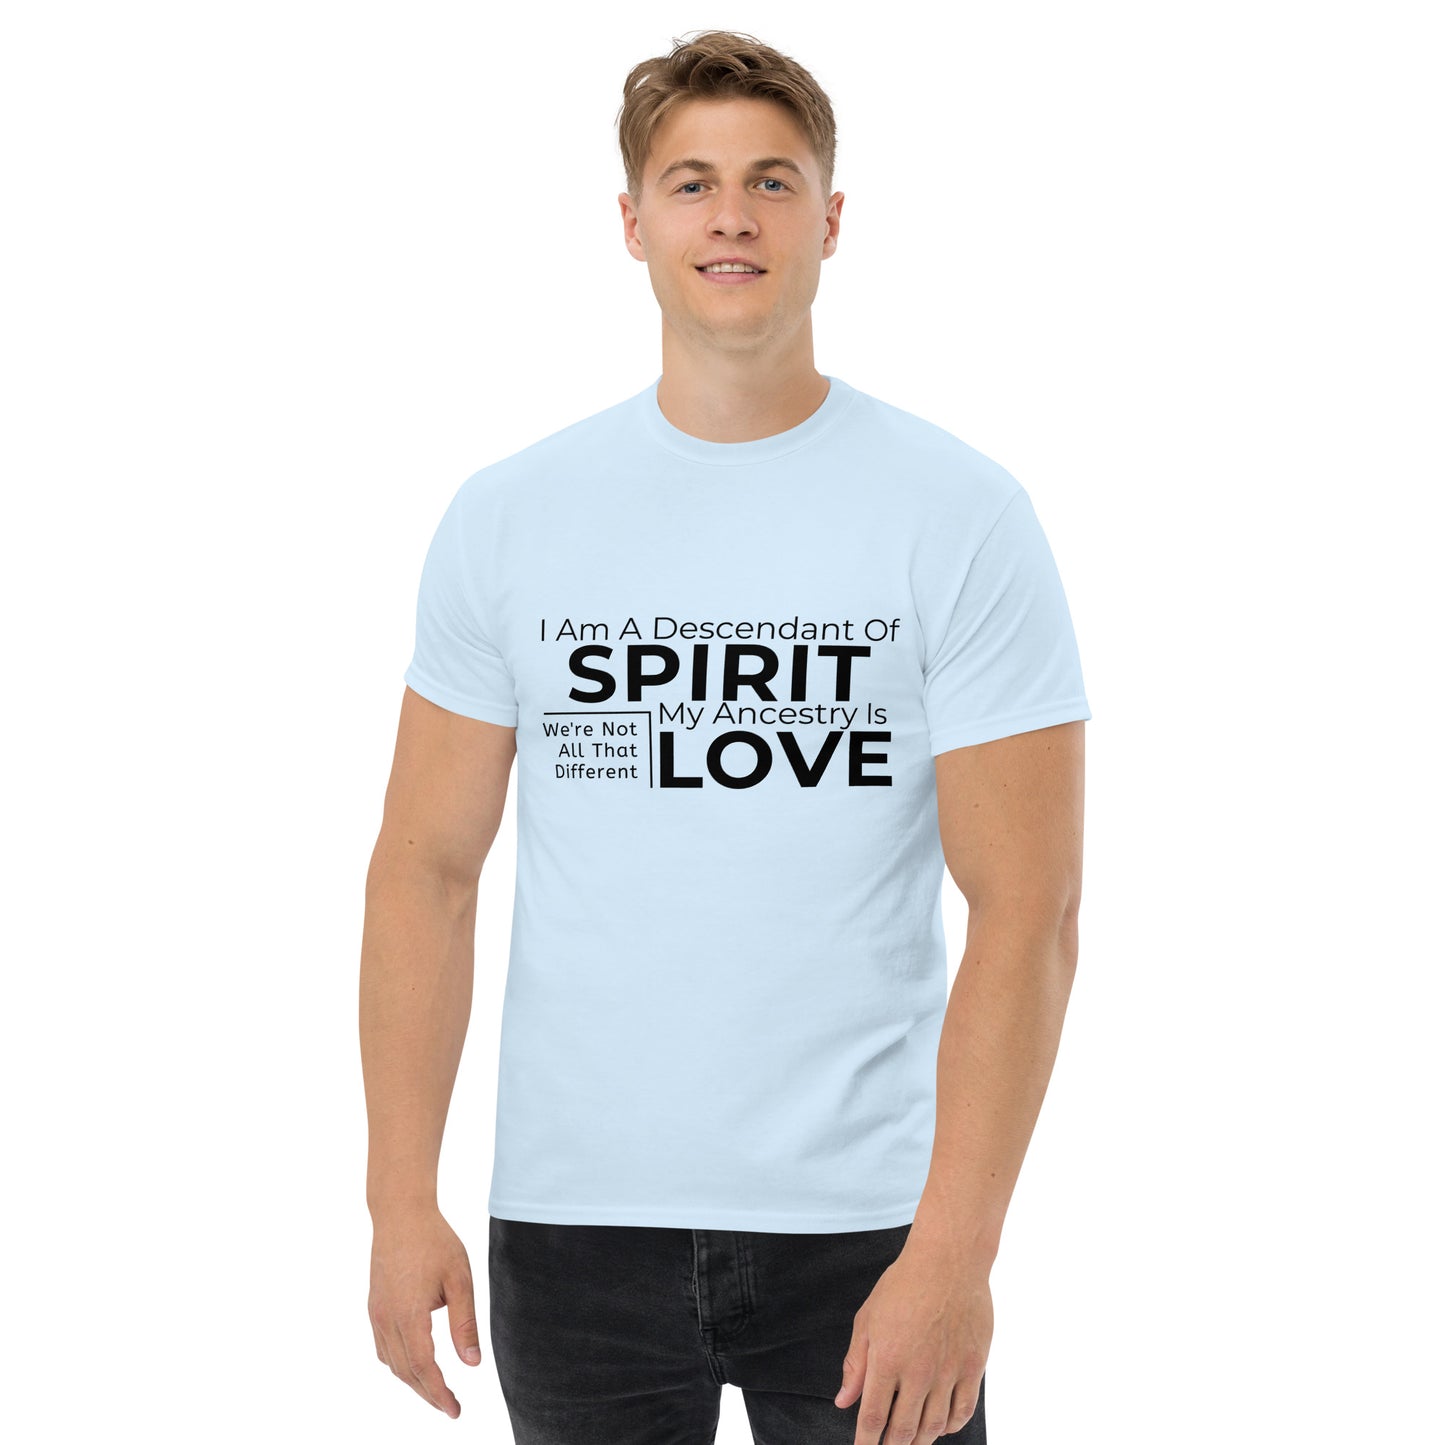 Spirit: Men's classic tee